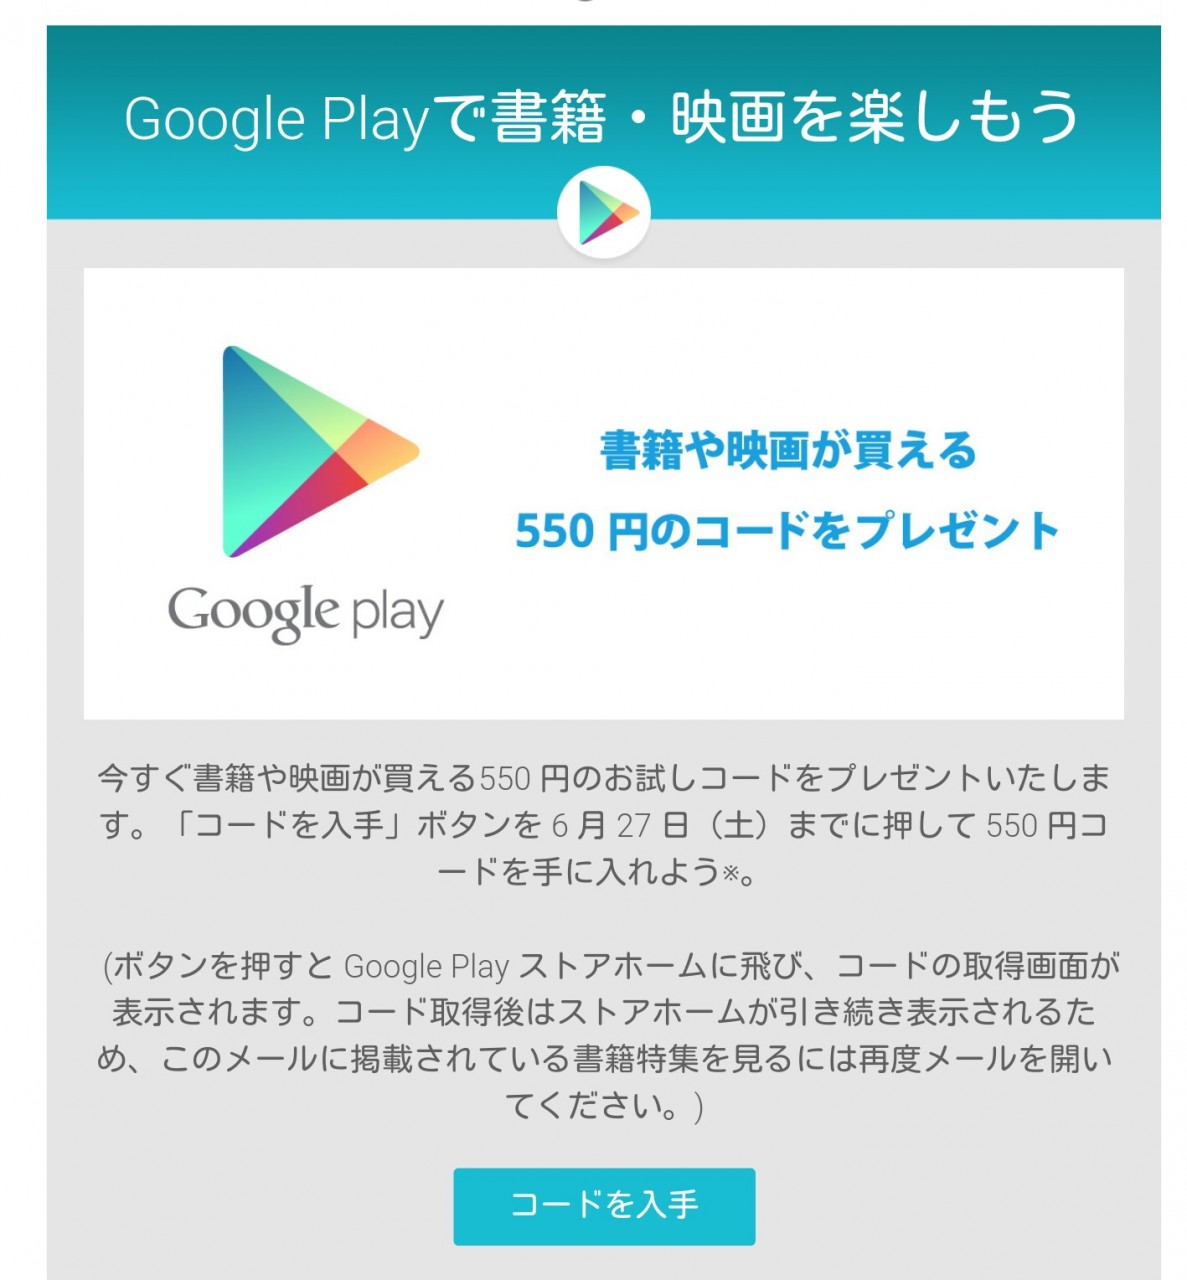 Google Playでの支払いに使用可能な550円分のクーポンコードをメールで配布中 Dream Seed